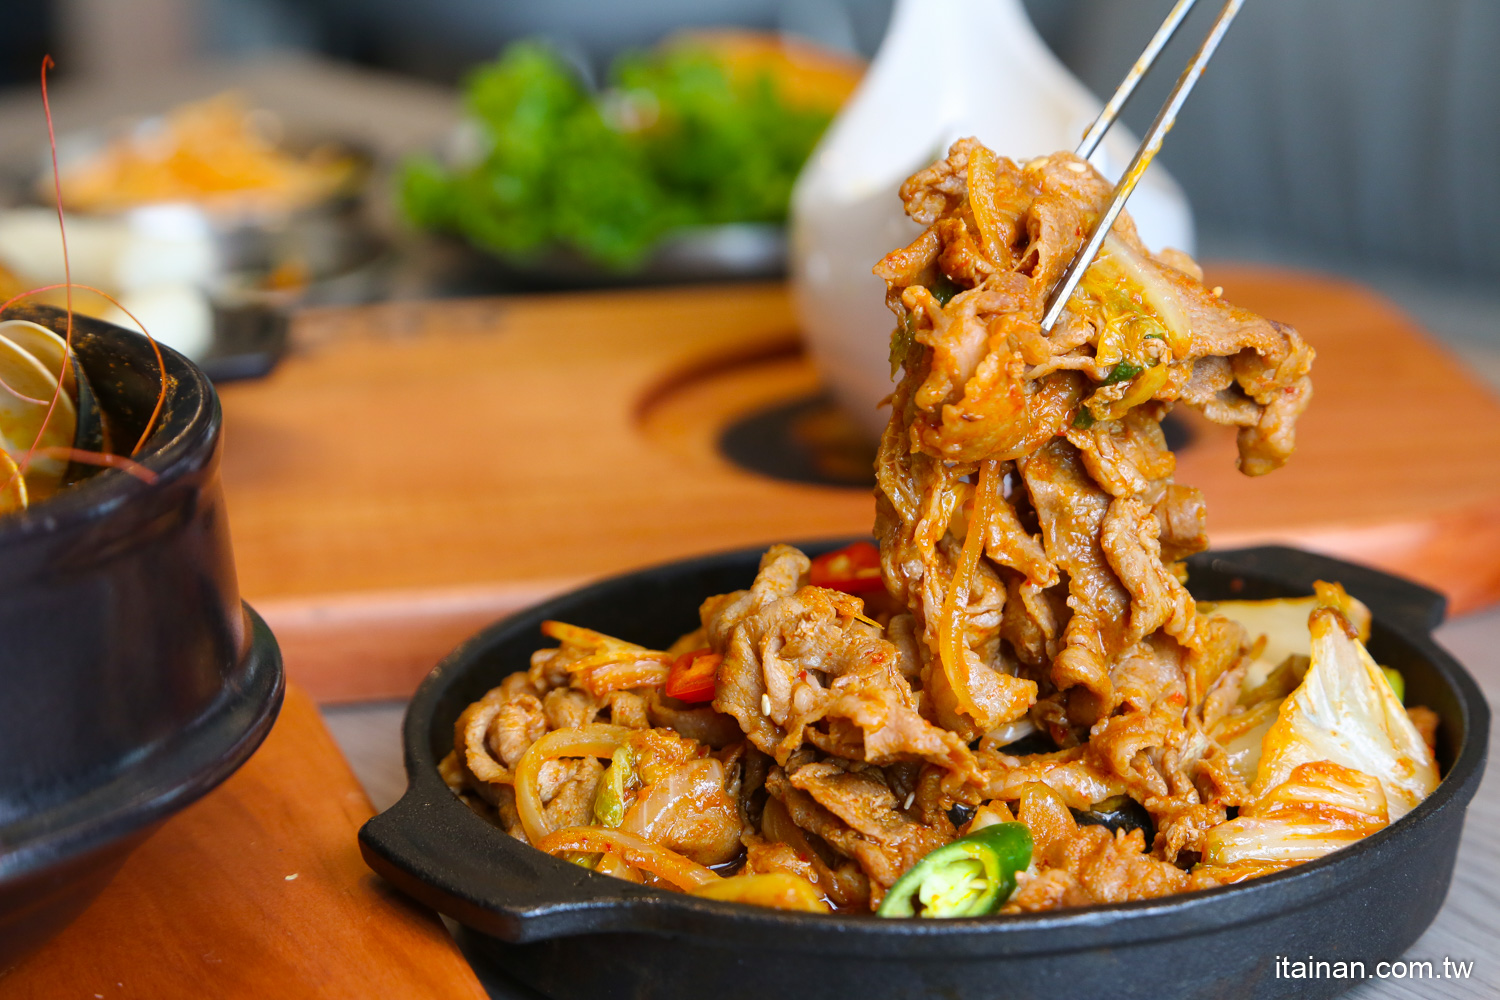 高雄美食,韓式料理,肉多多,韓國料理,辛韓道,高雄餐廳